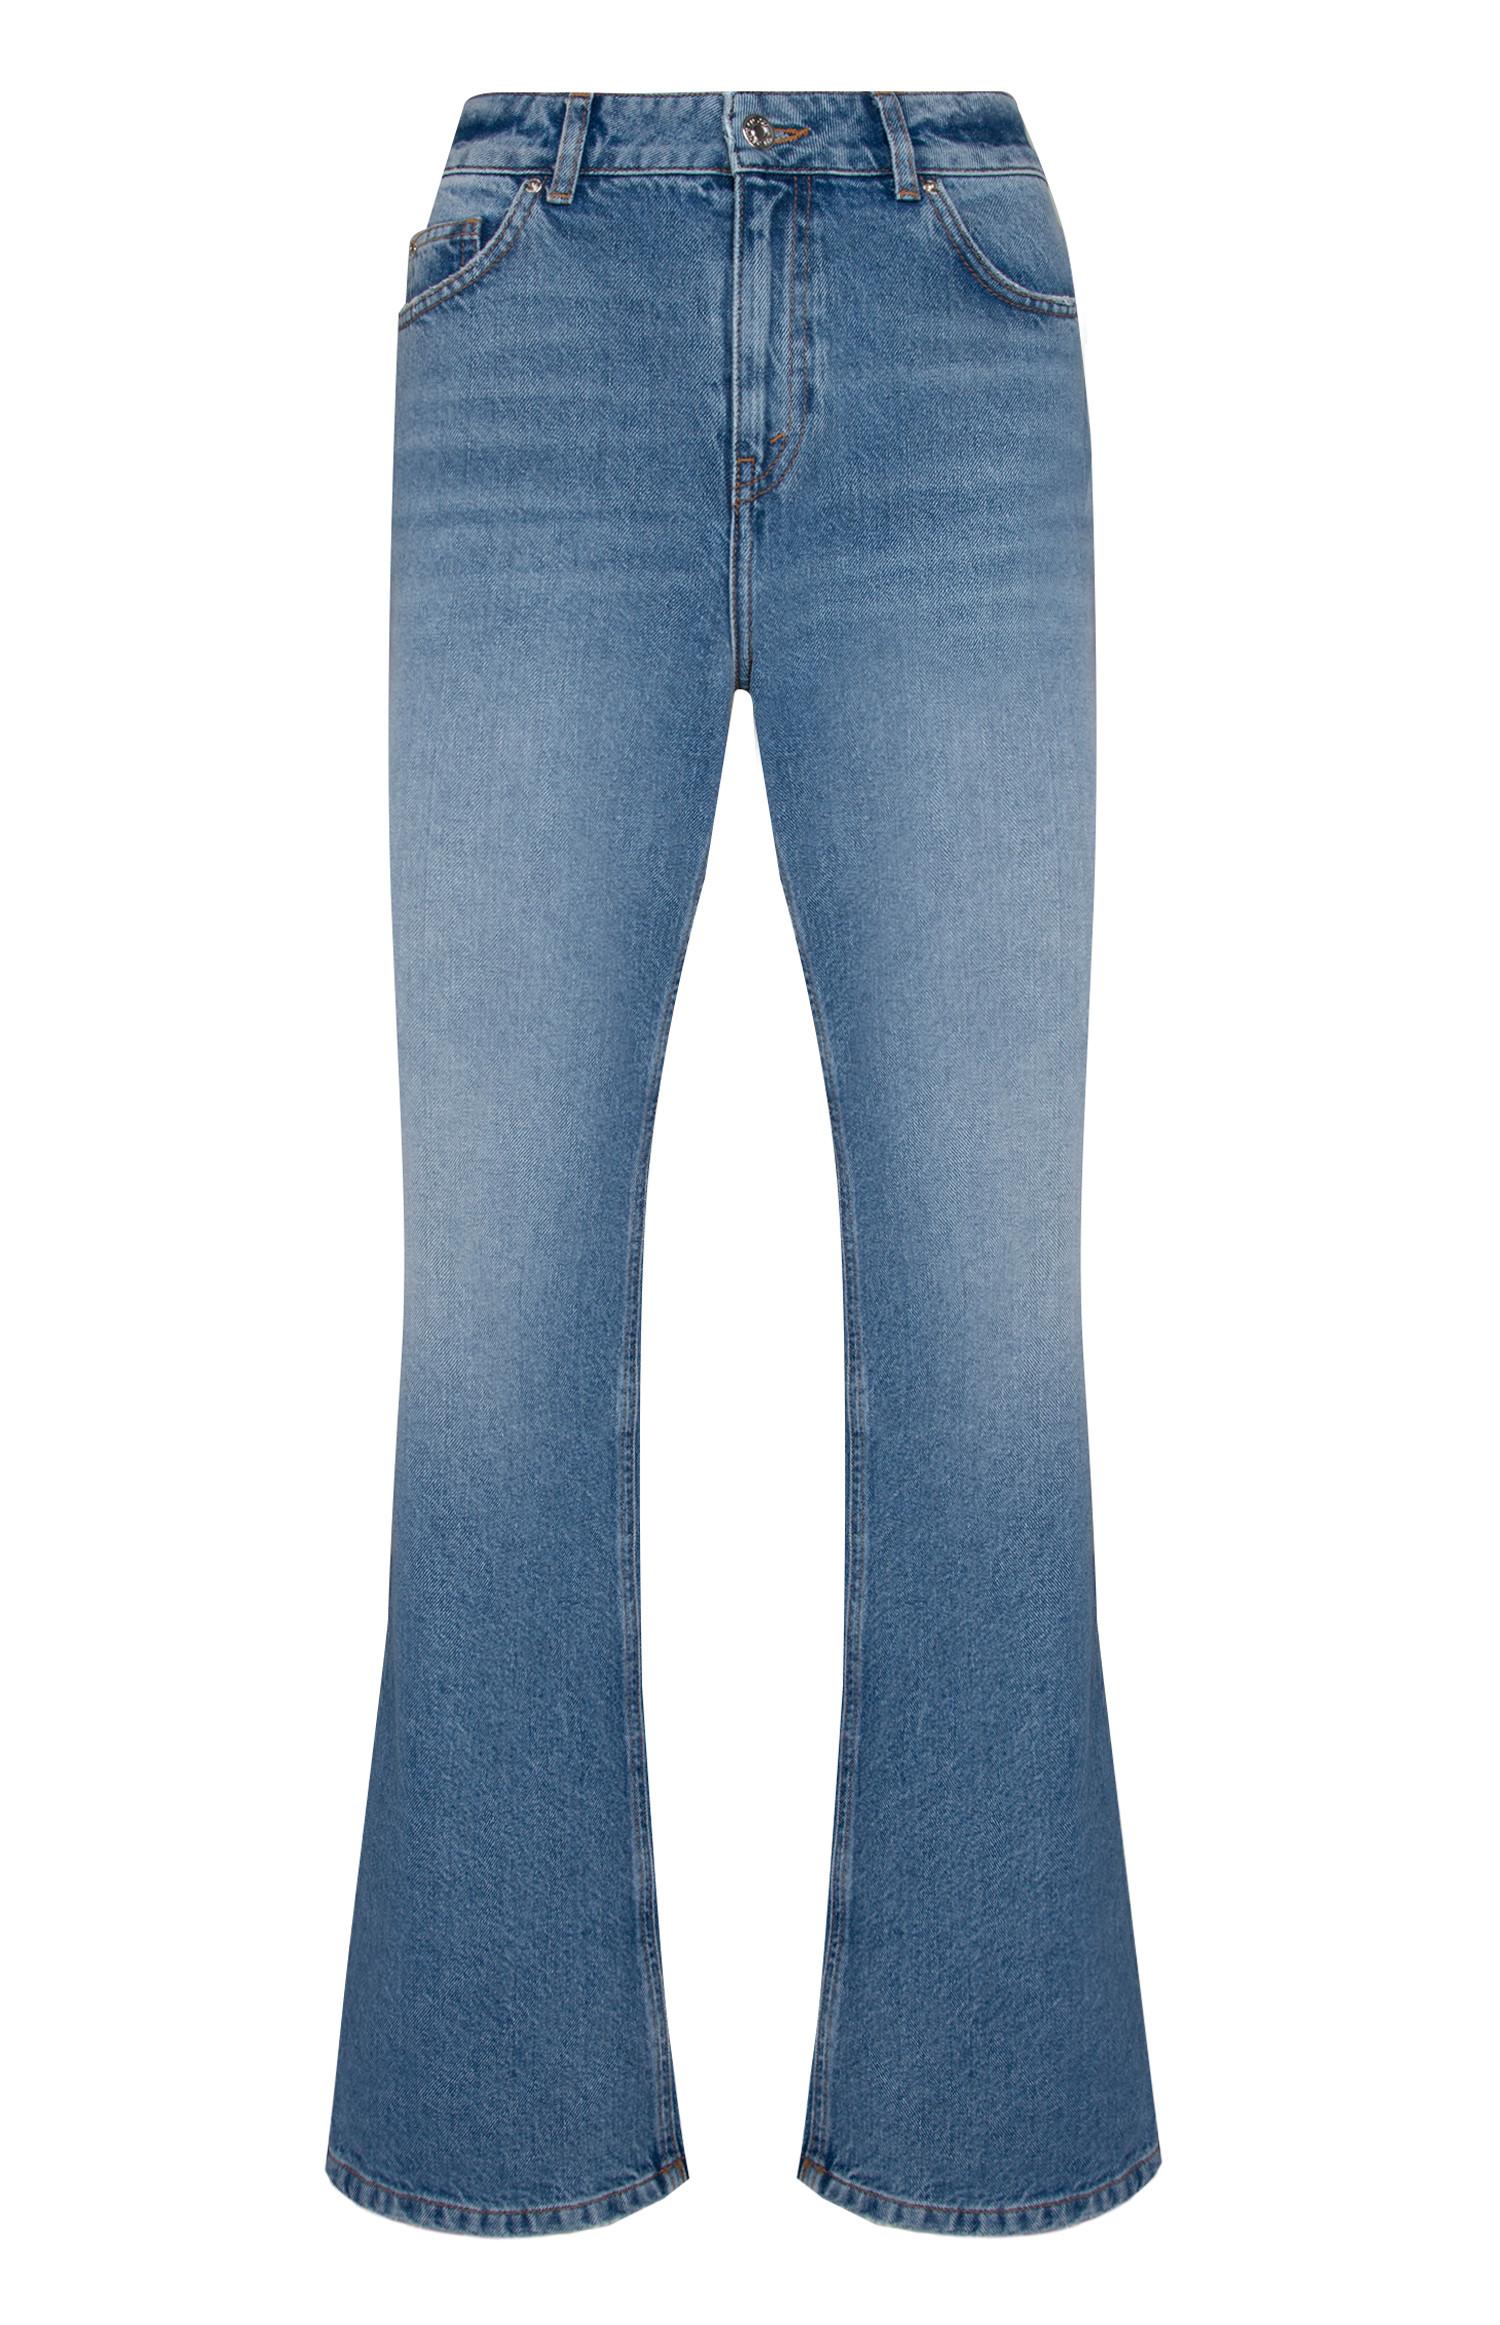 topman blue jeans